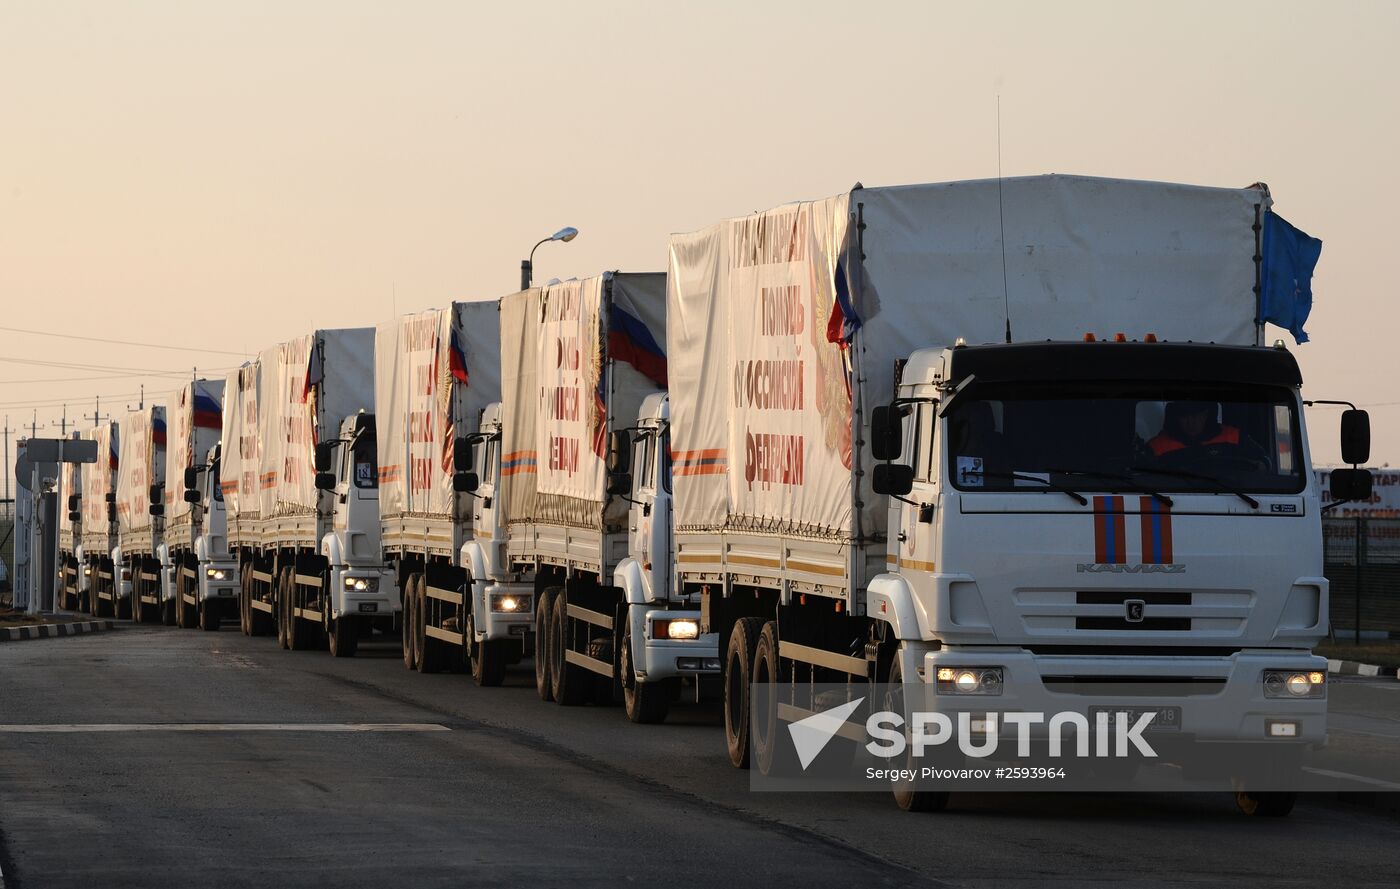 Russia's humanitarian aid convoy for Donbas arrives at Matveyev Kurgan checkpoint